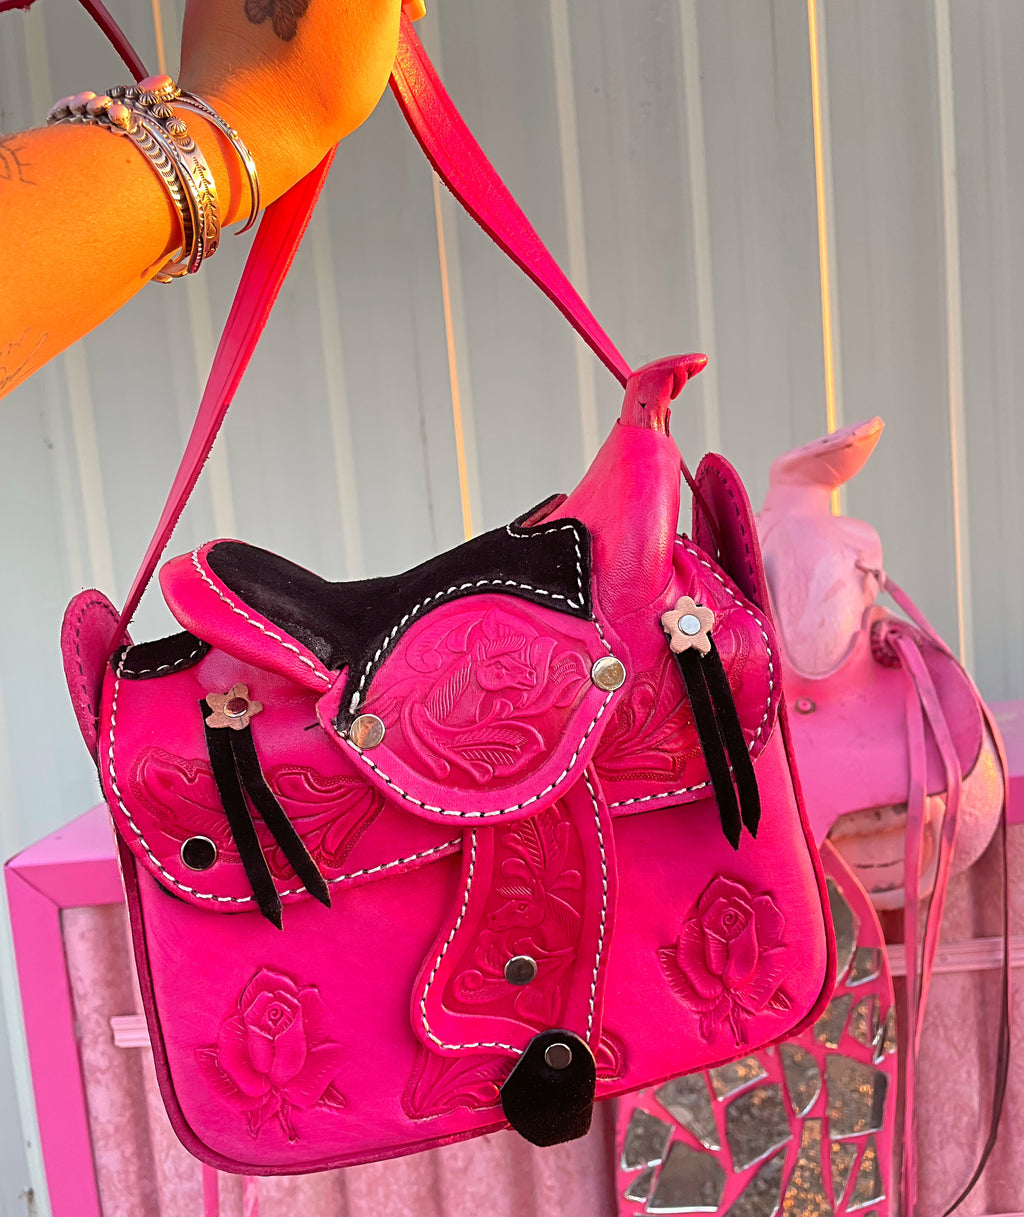 The PINK Saddle Bag